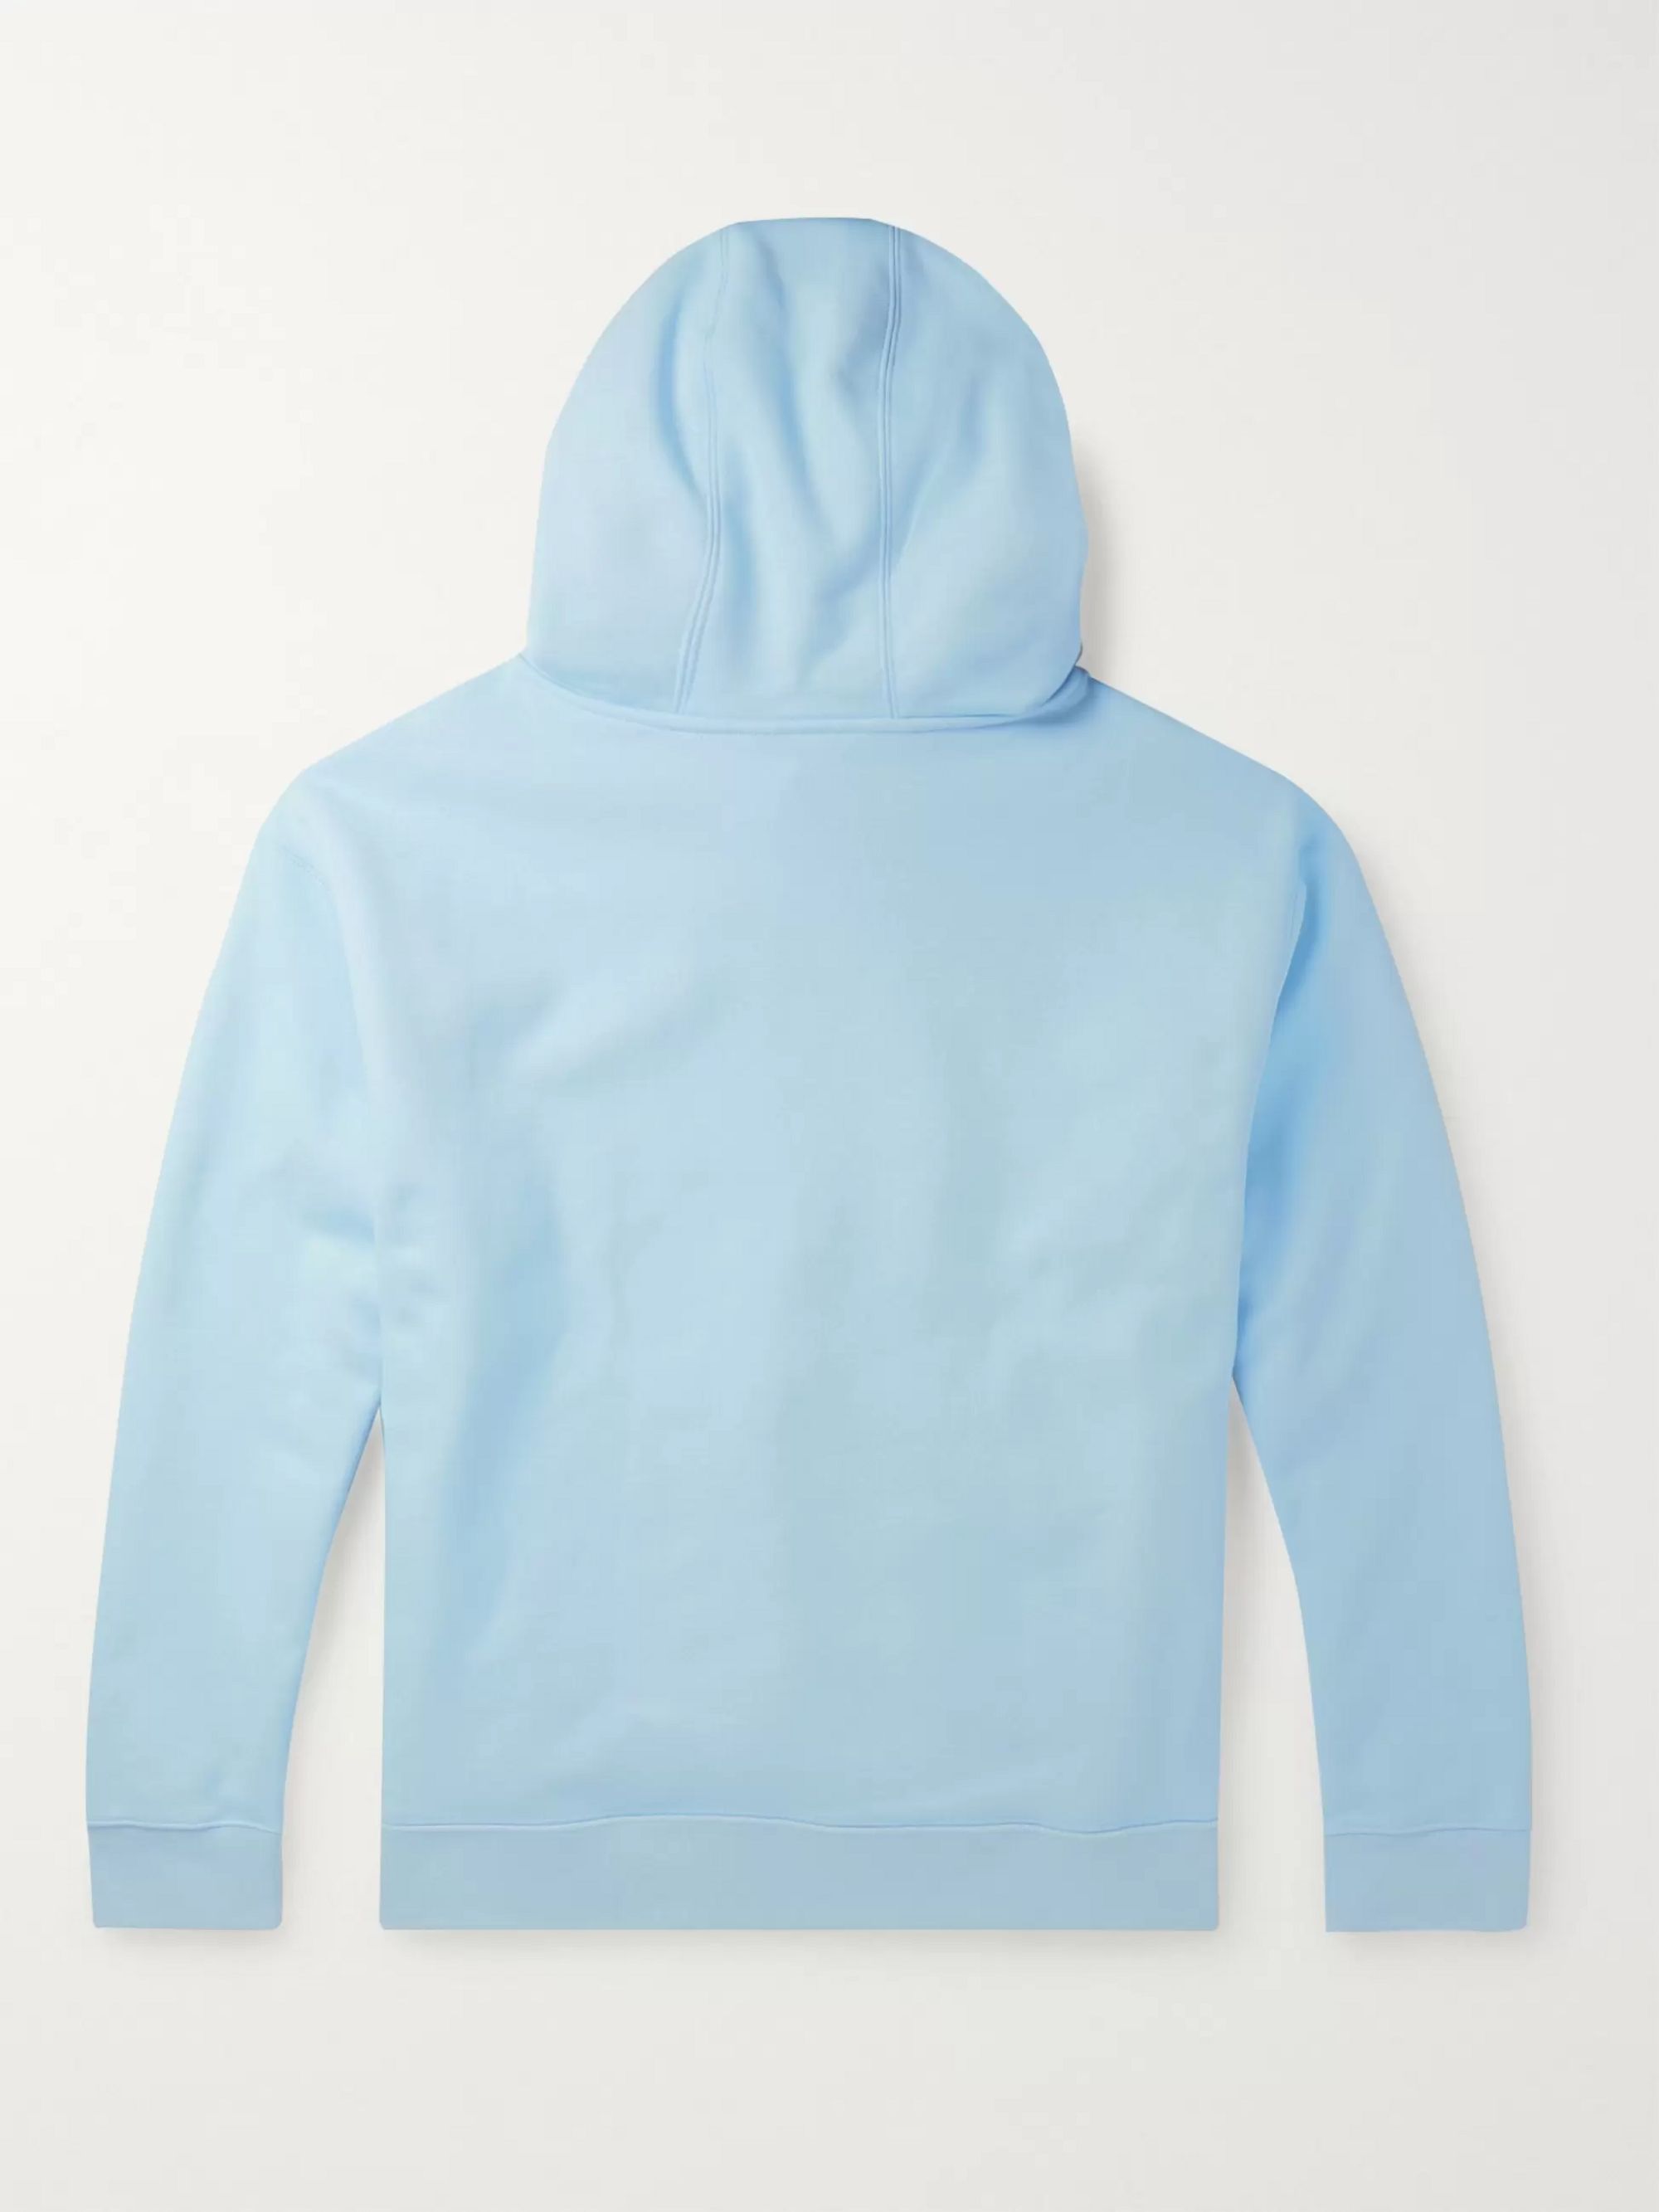 sky blue hoodie nike